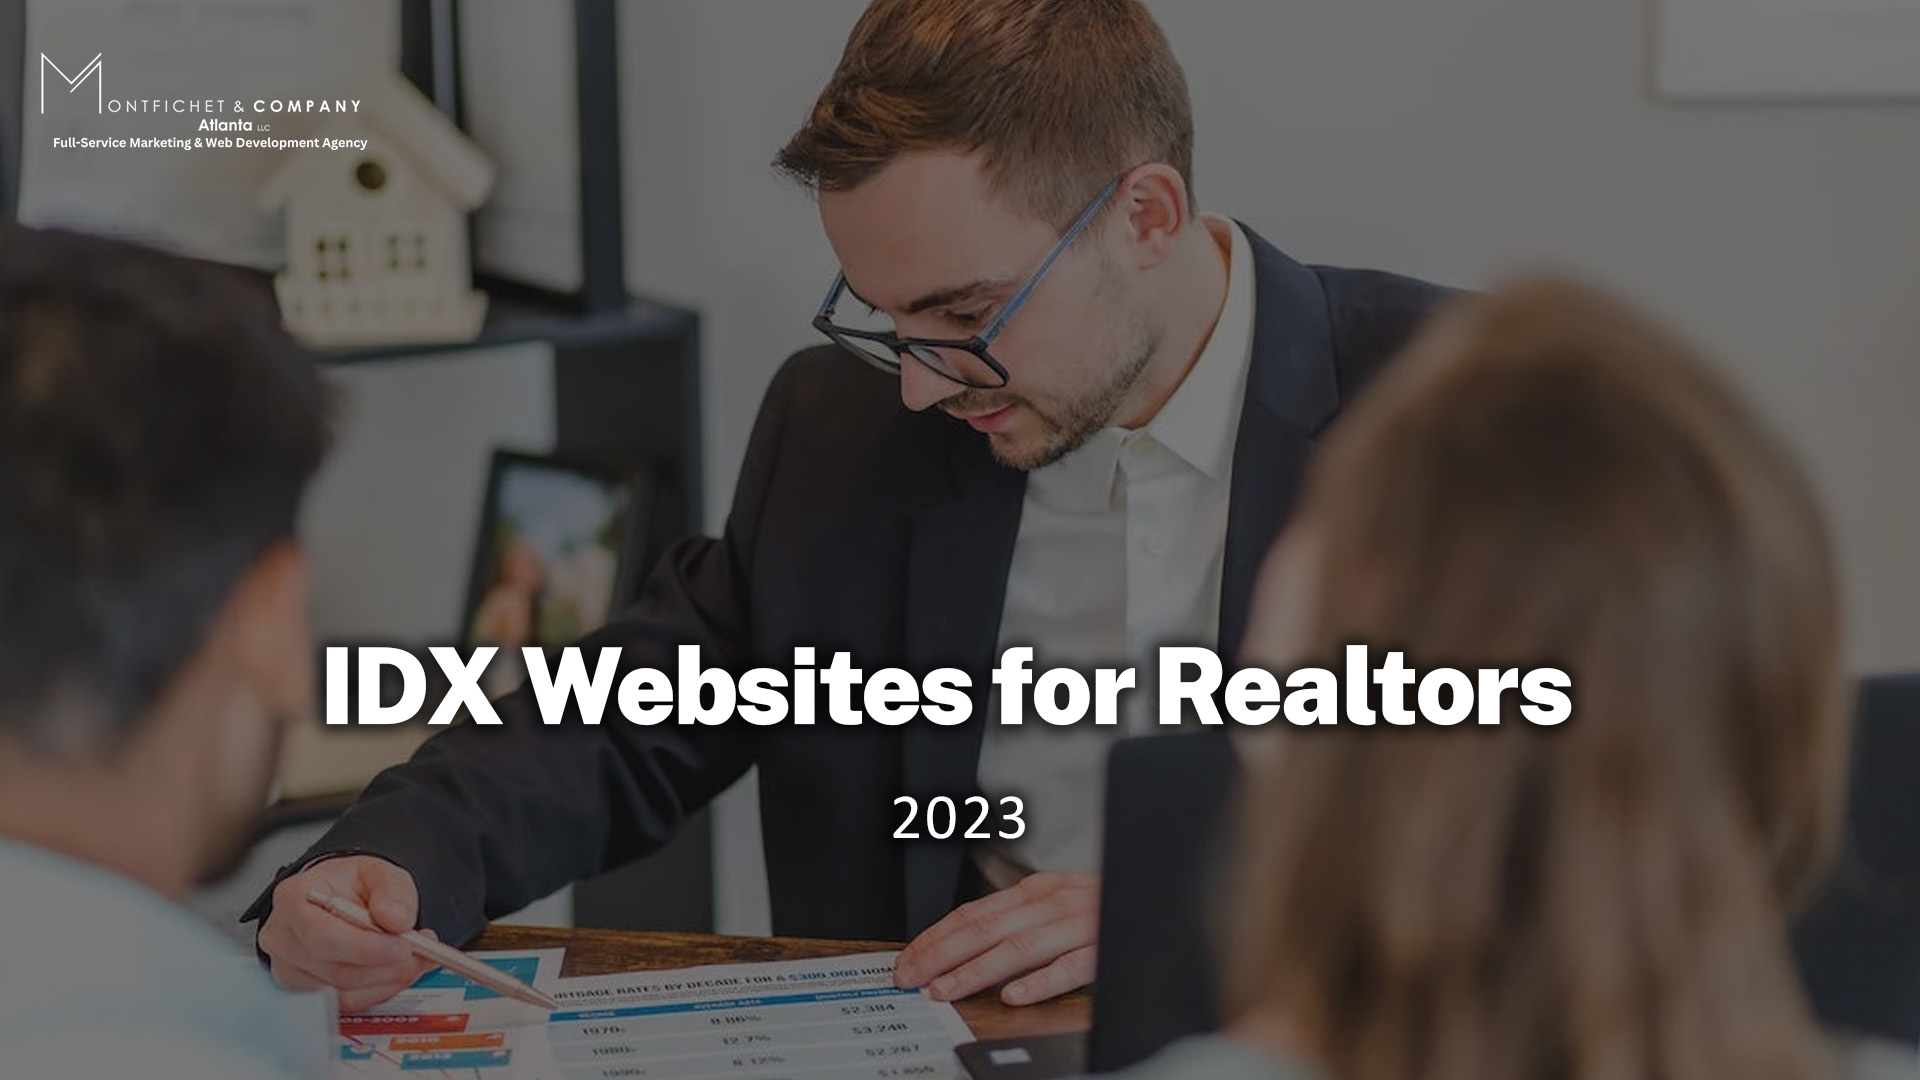 IDX Websites for Realtors 2023 